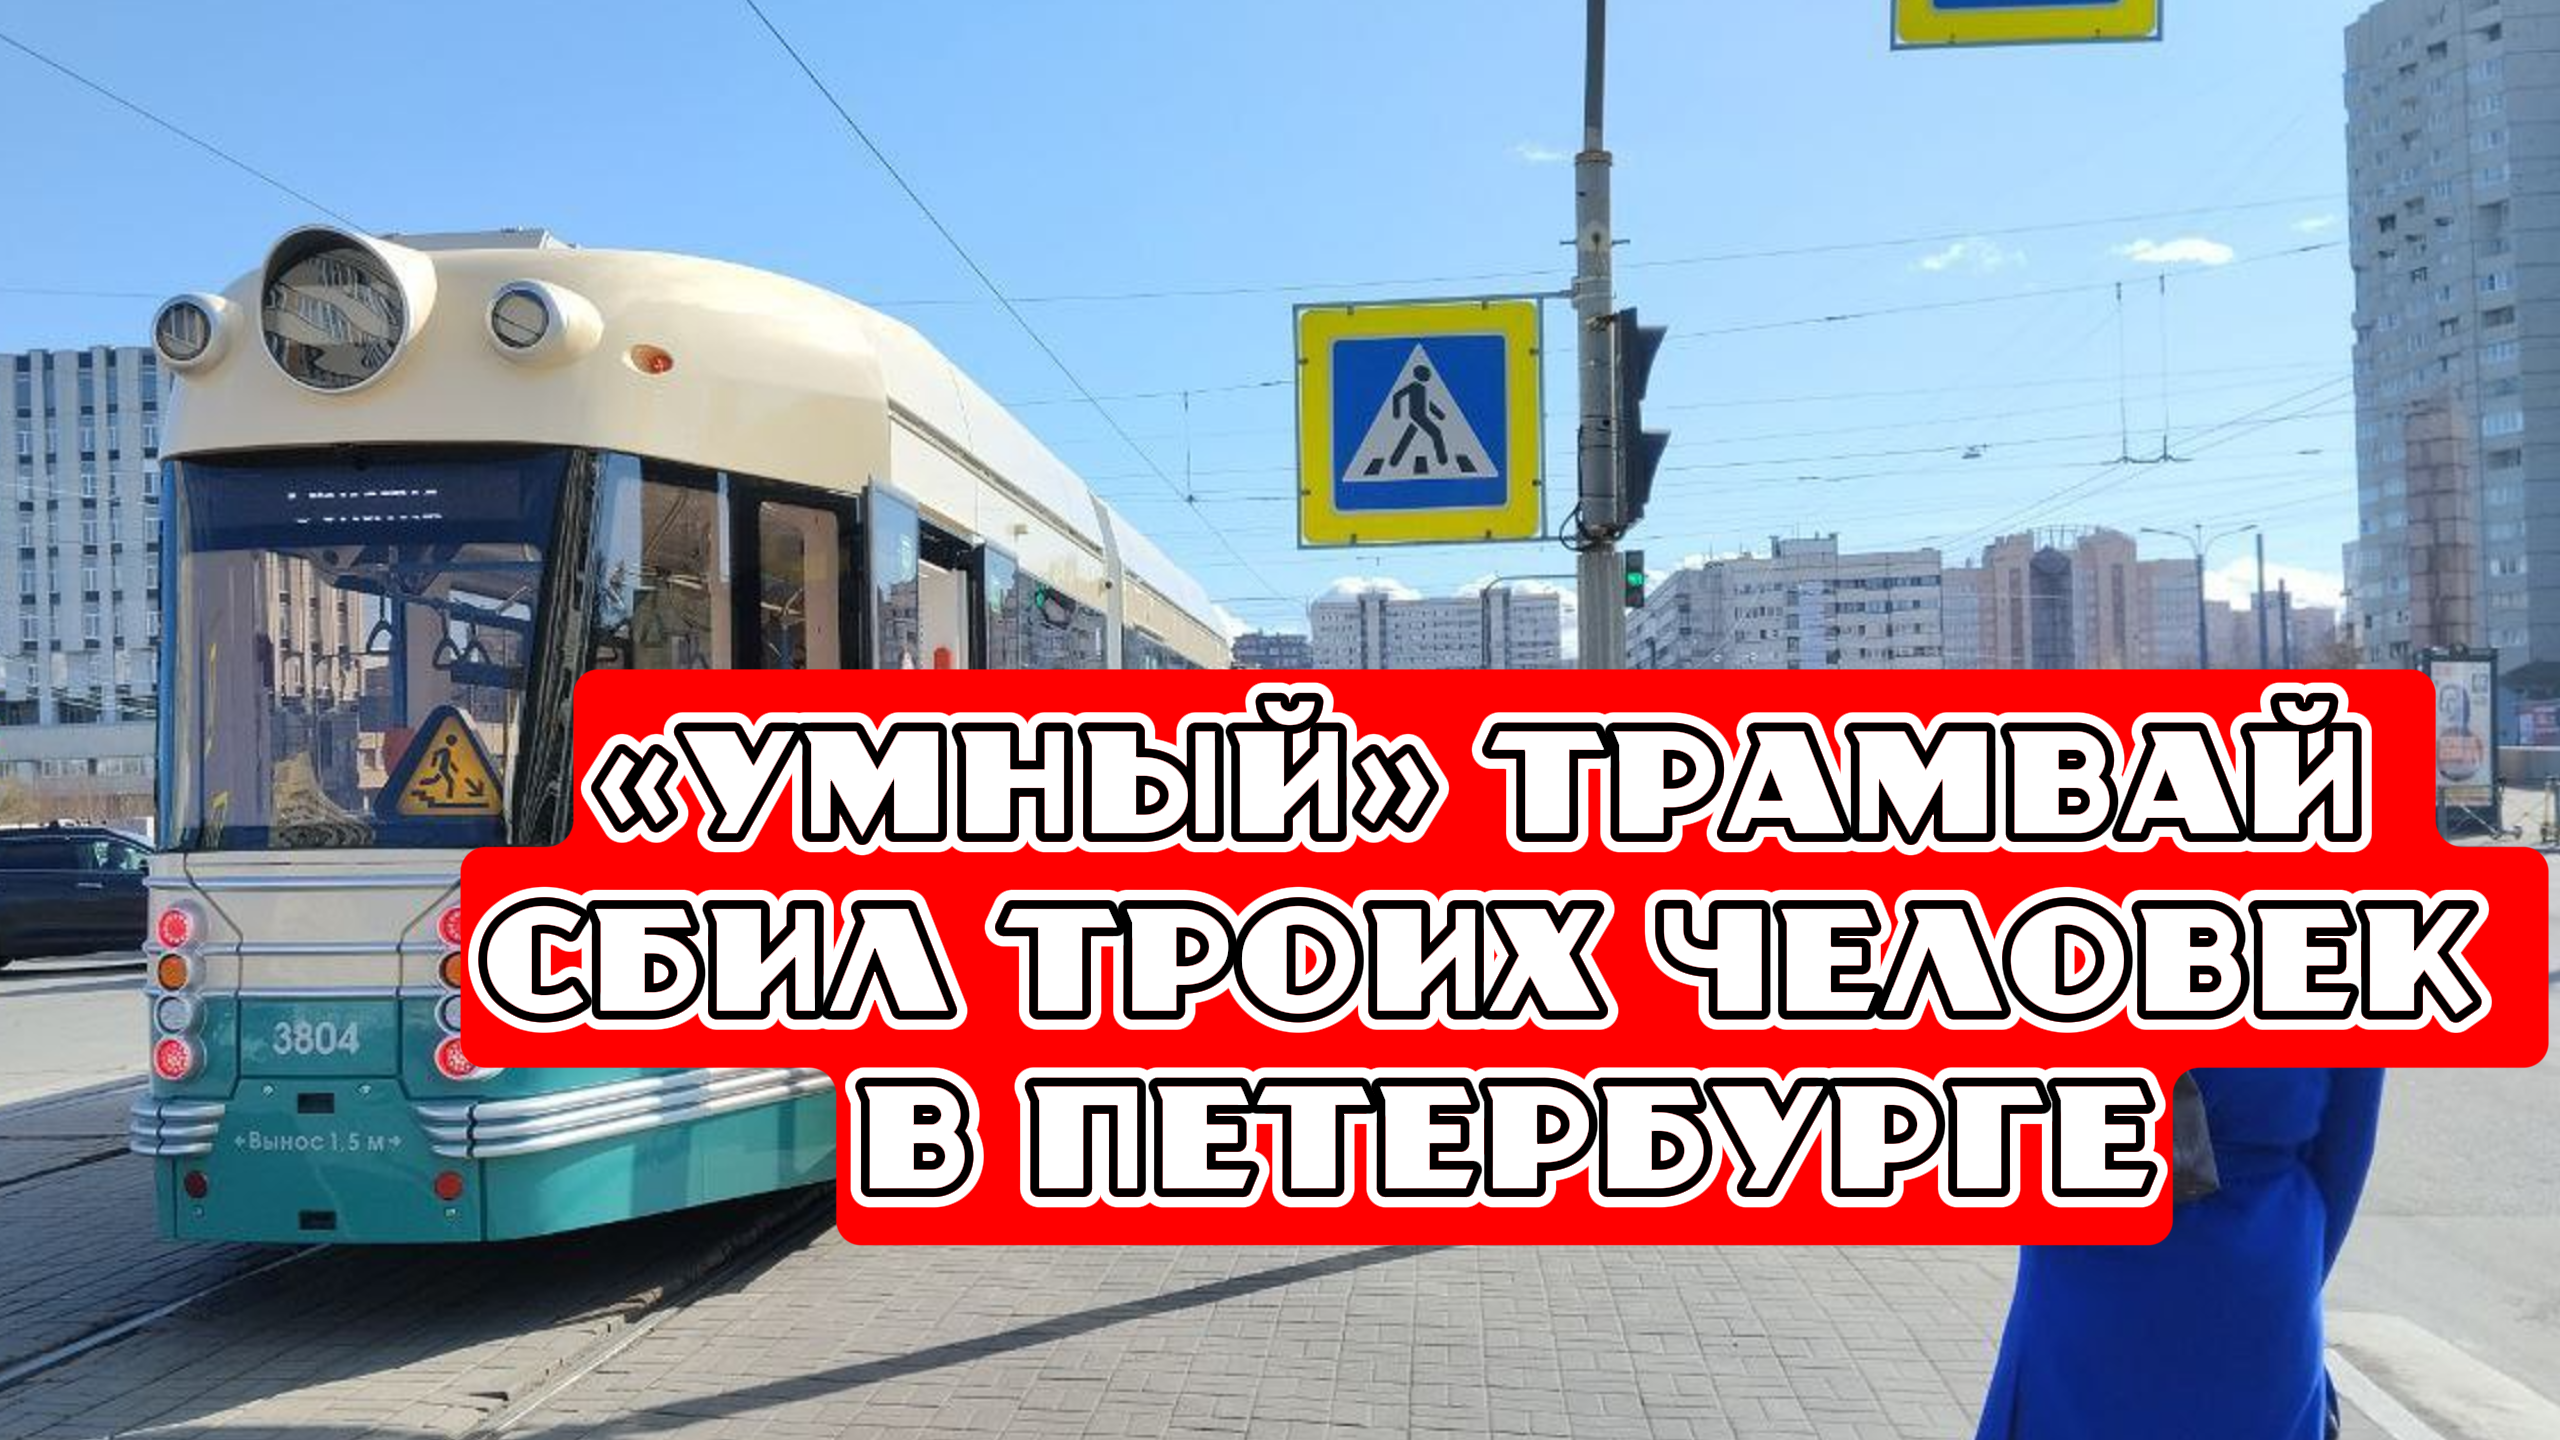 «Умный» трамвай сбил троих человек на Васильевском острове в Петербурге